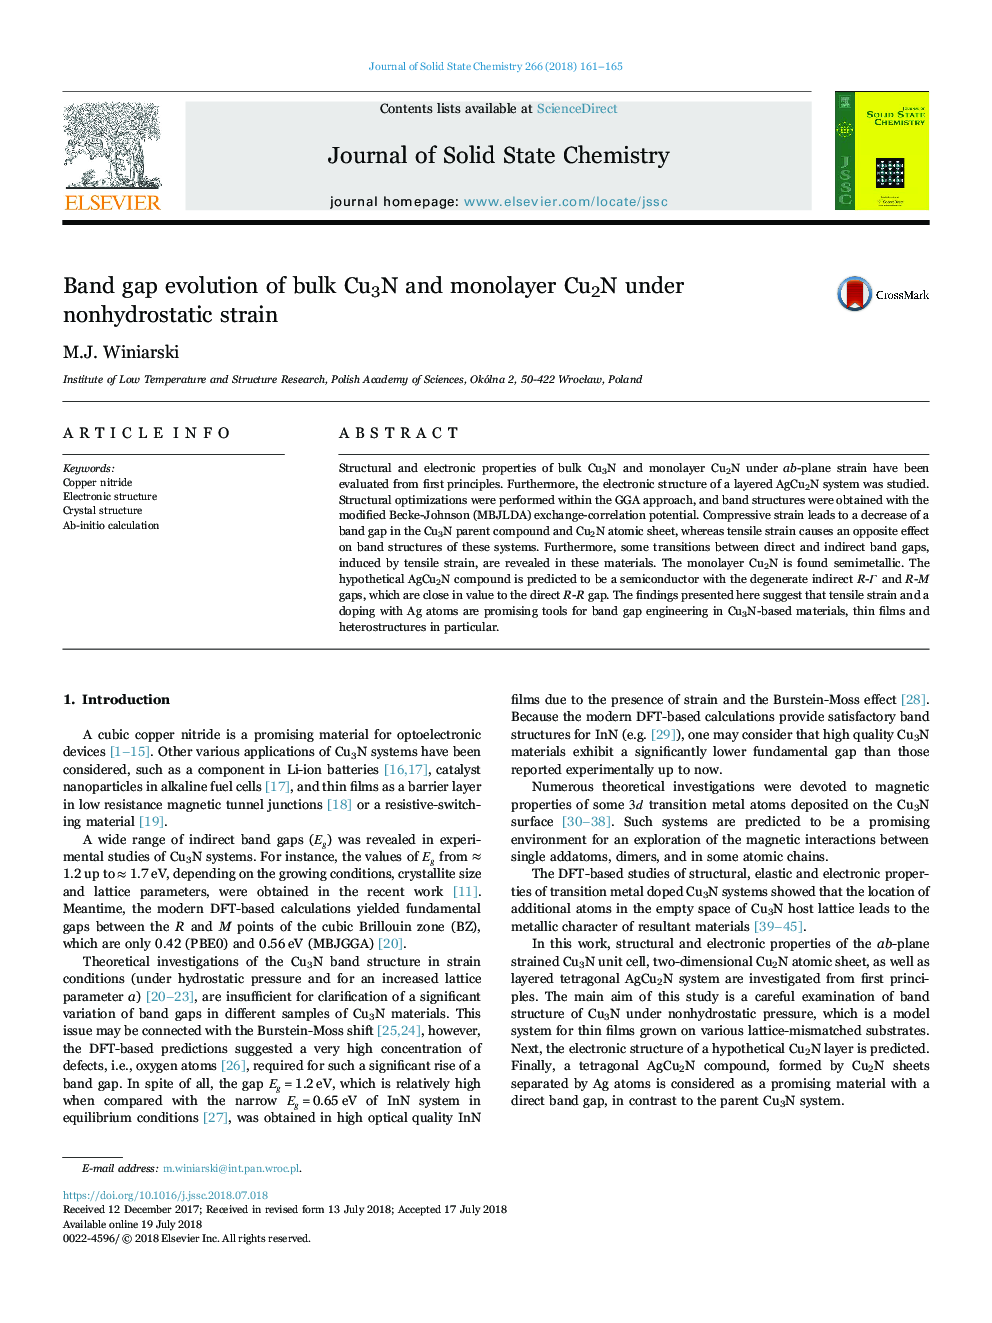 Band gap evolution of bulk Cu3N and monolayer Cu2N under nonhydrostatic strain